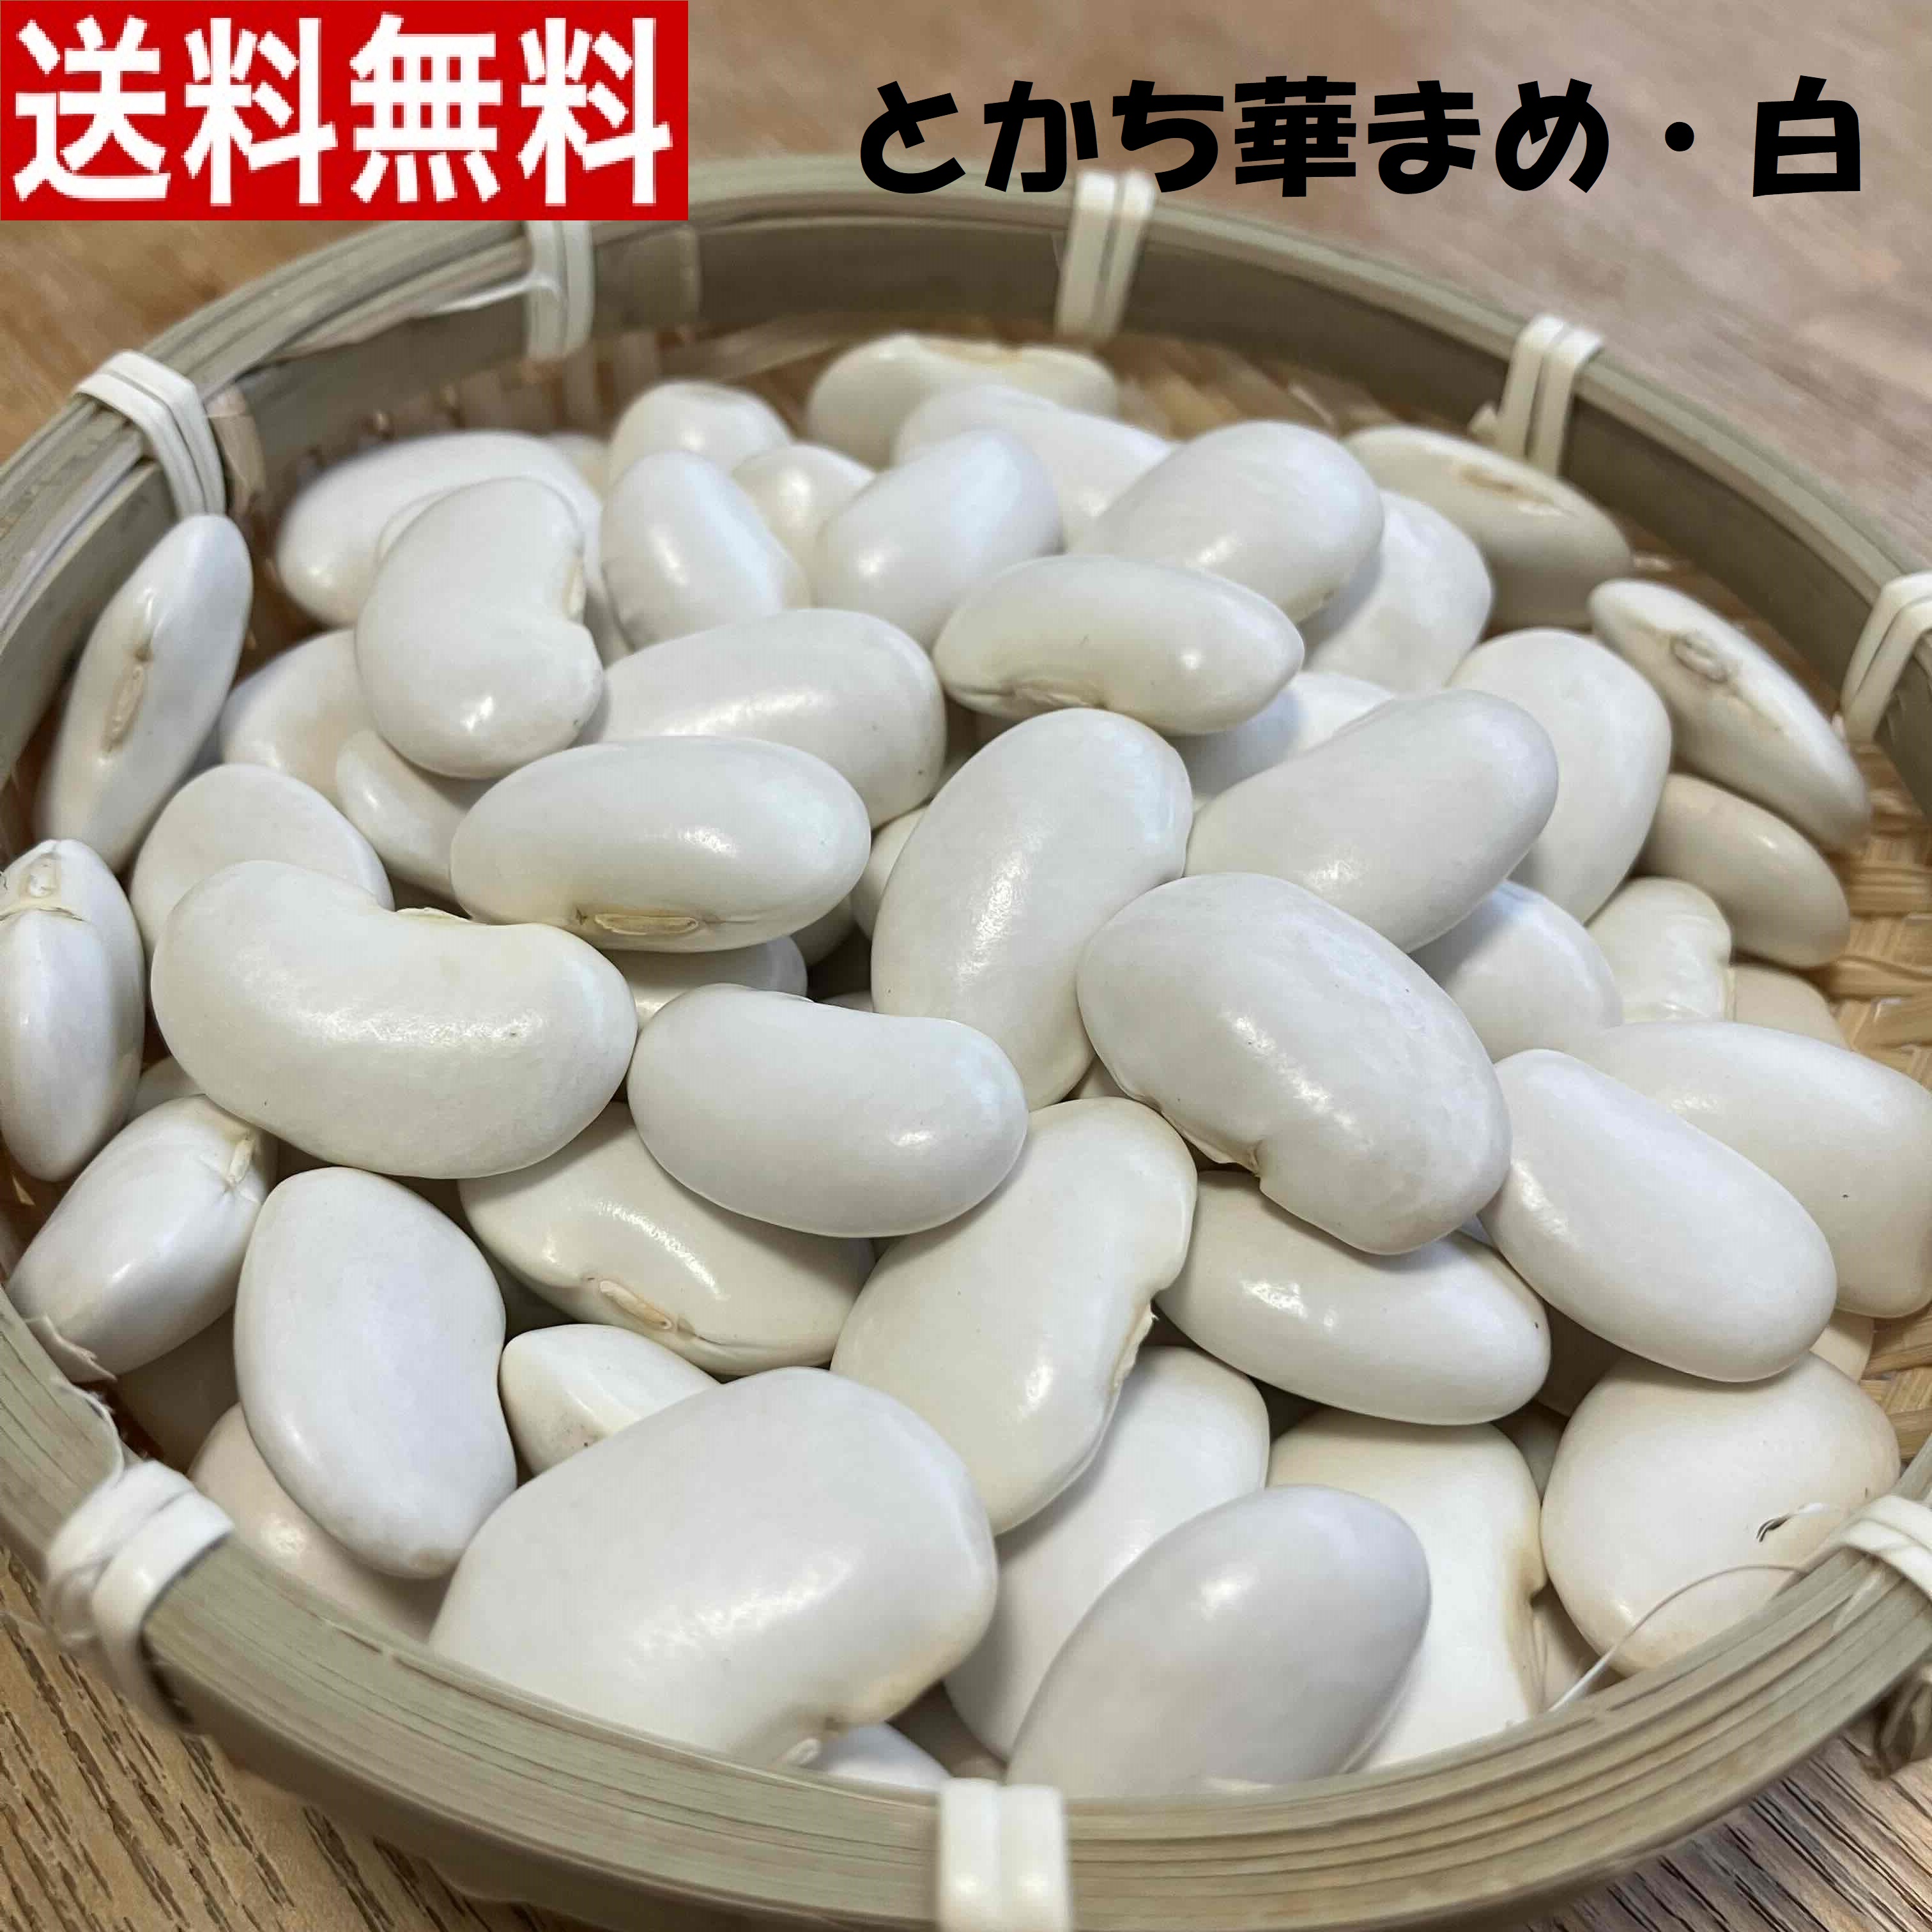 白花豆 5kg 北海道令和4年産 無農薬 発送が8/20以降になります